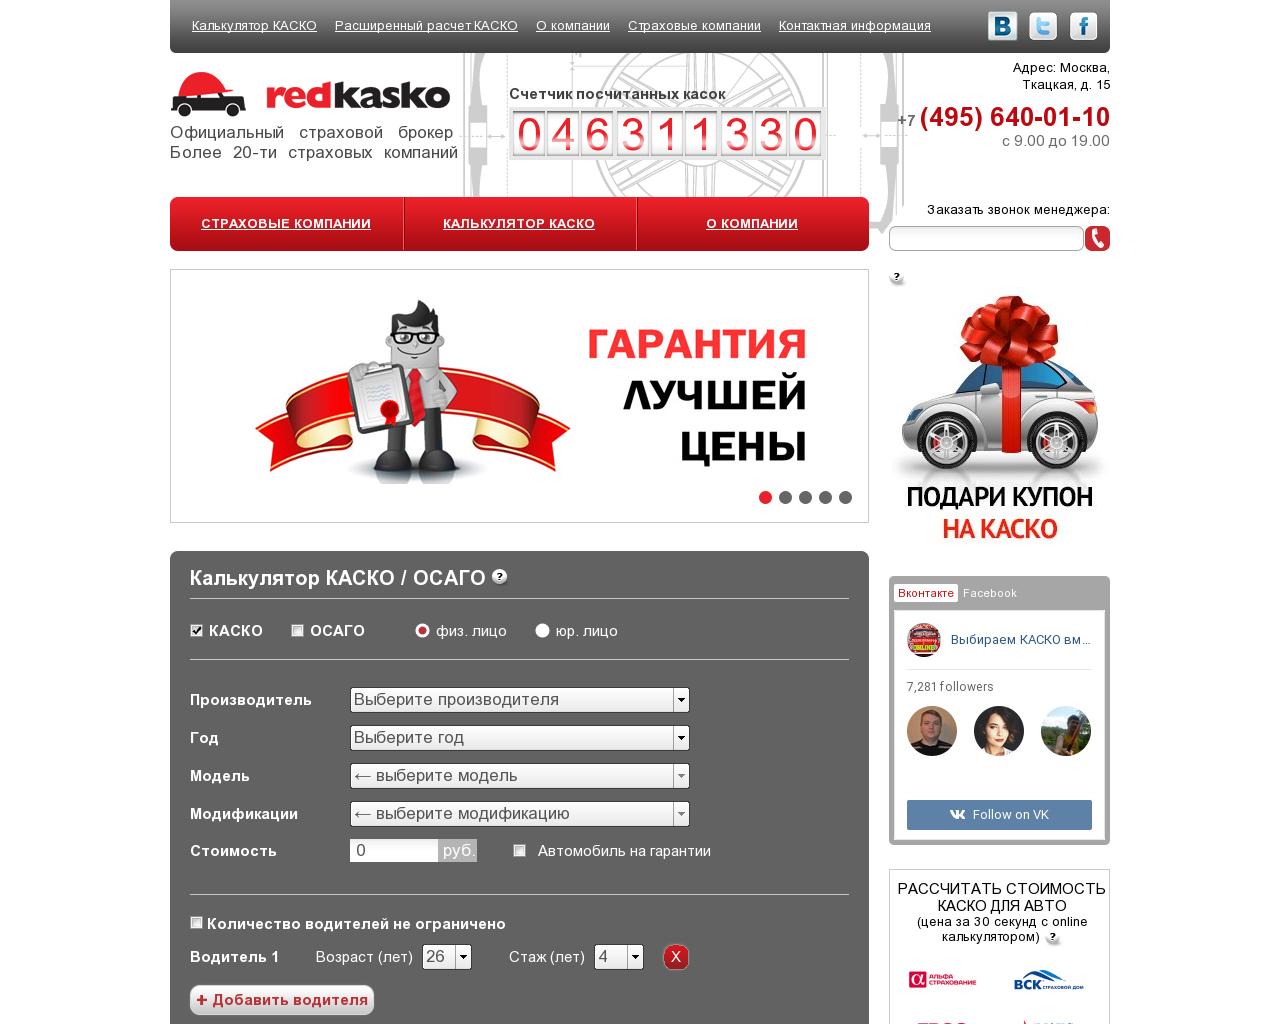 Изображение сайта red-kasko.ru в разрешении 1280x1024